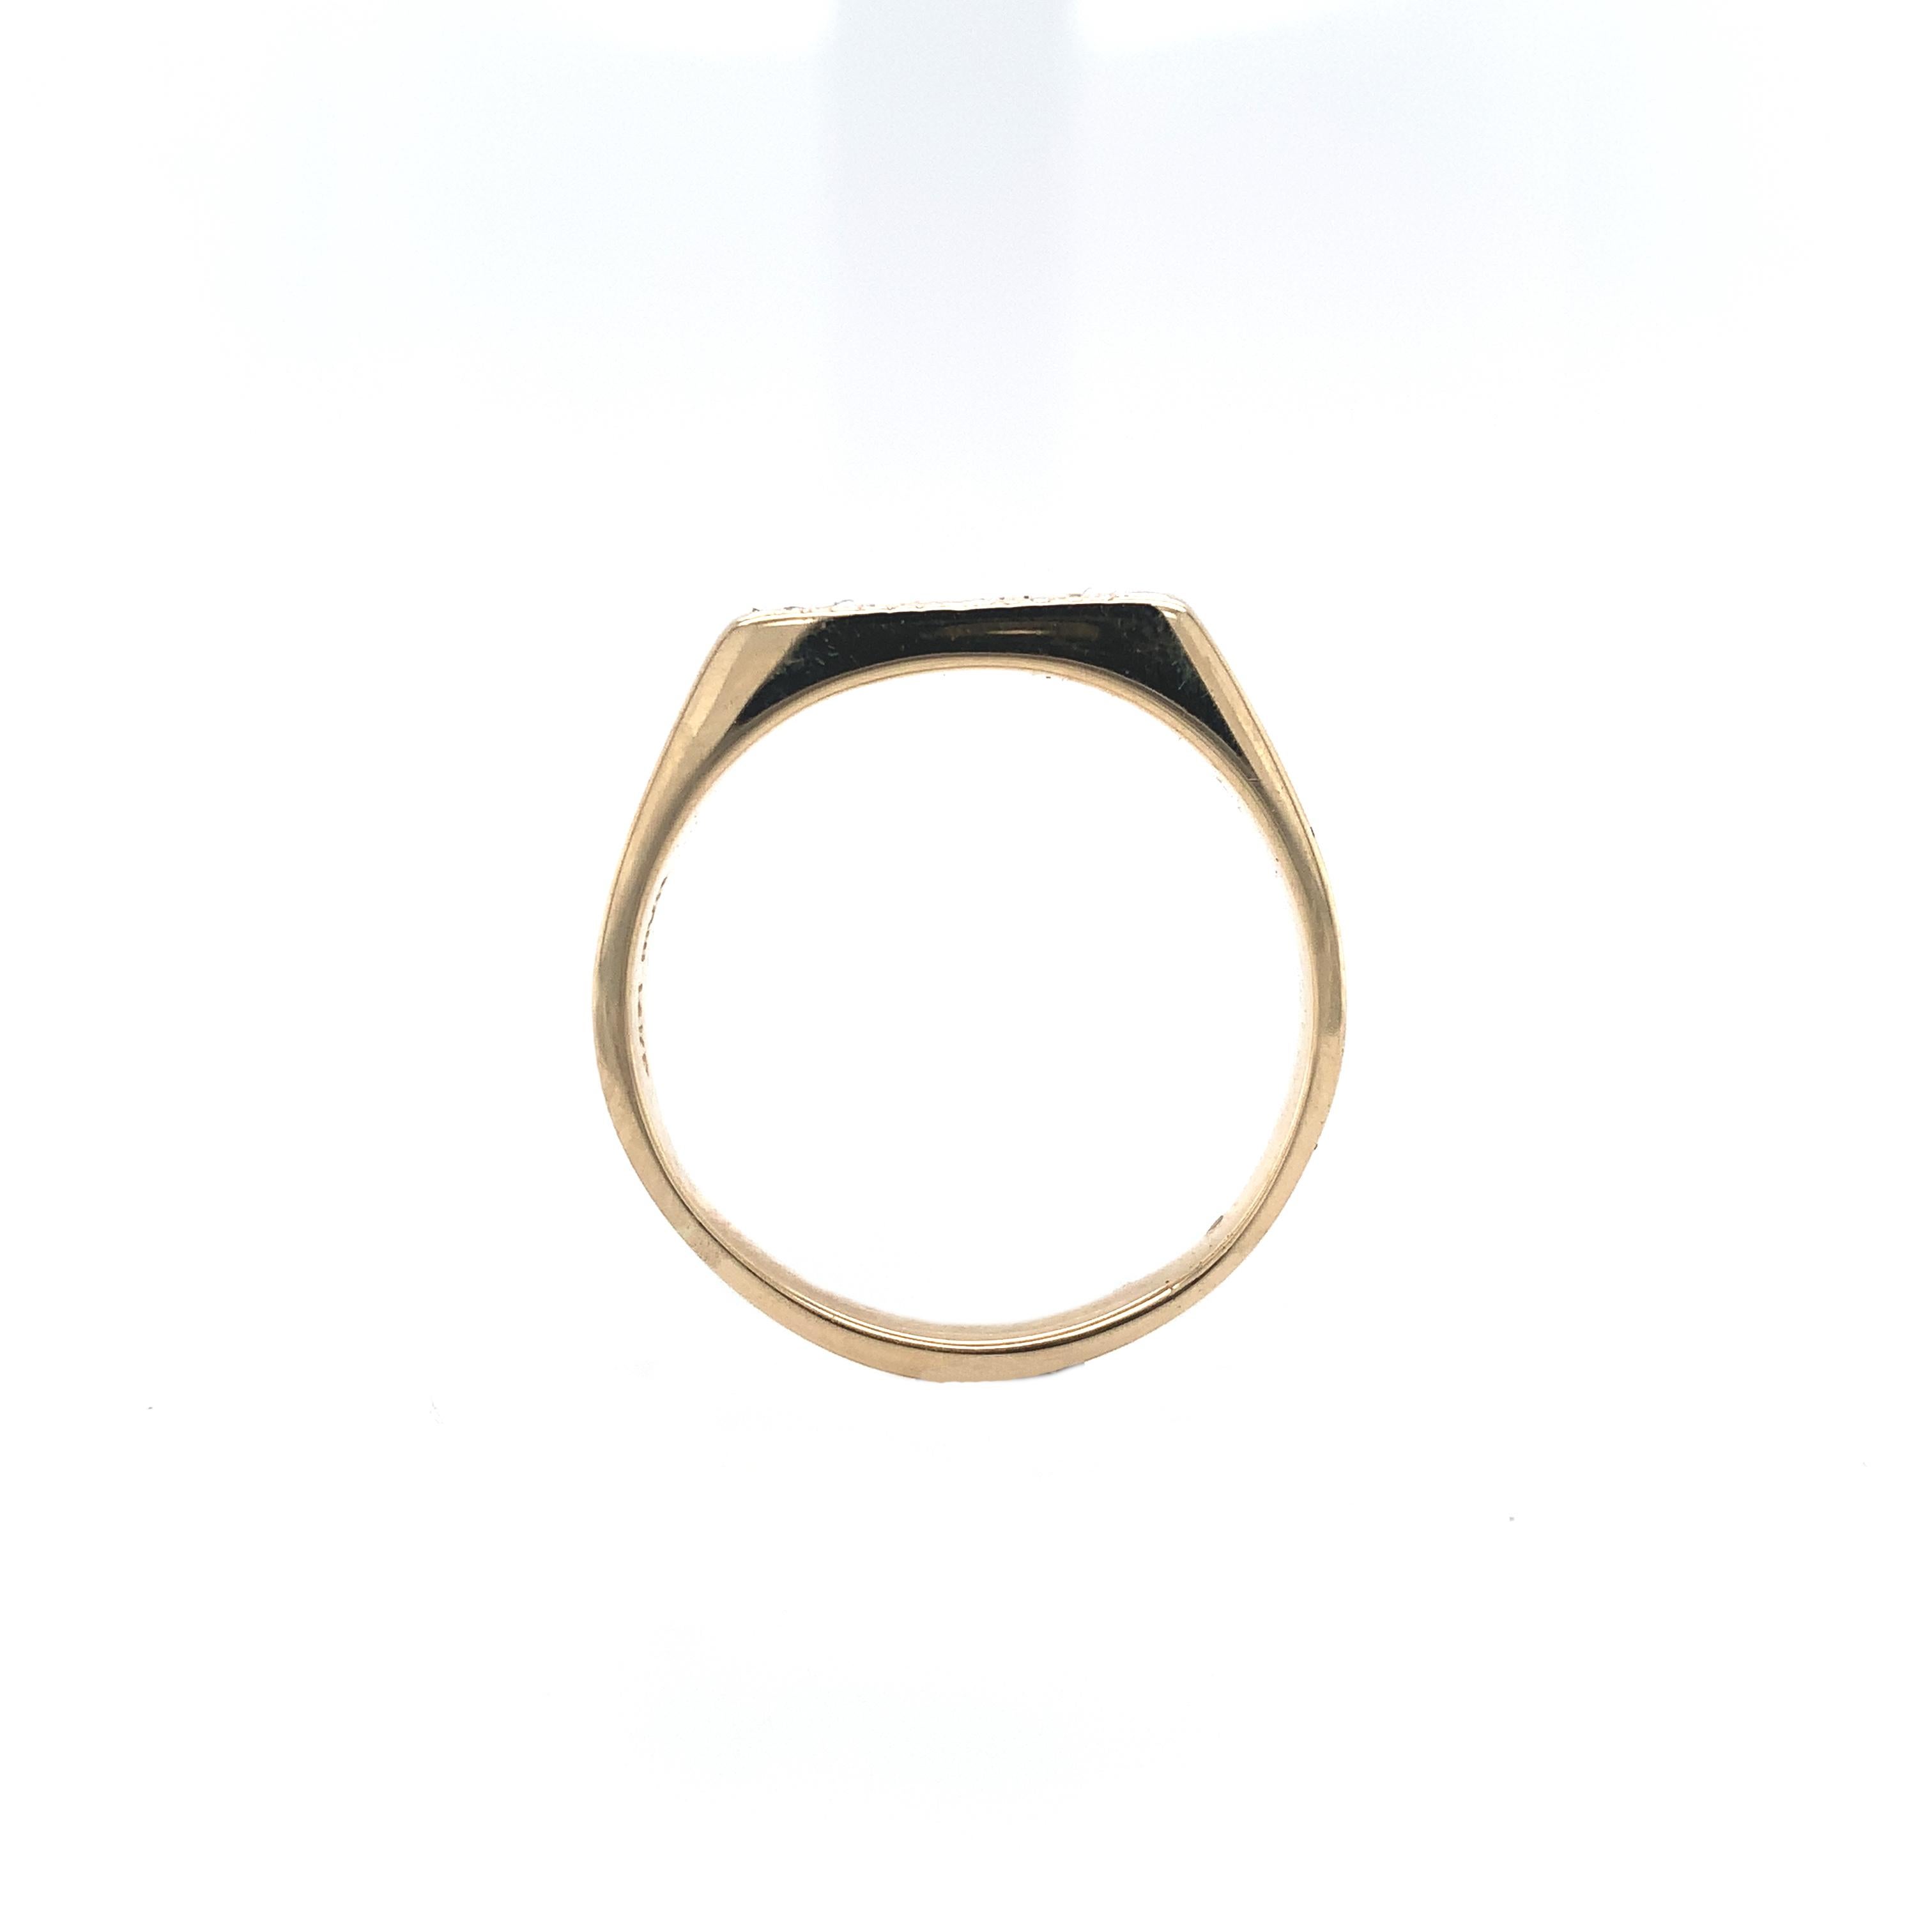 Vintage 14K Gelbgold Herren Hand graviert Diamantband Ring. 3 runde Diamanten im Brillantschliff sind in eingravierten Starbursts mit Diamantformen gefasst. Die Diamanten wiegen insgesamt etwa 0,10cts und messen etwa 2mm. Der Ring passt auf einen